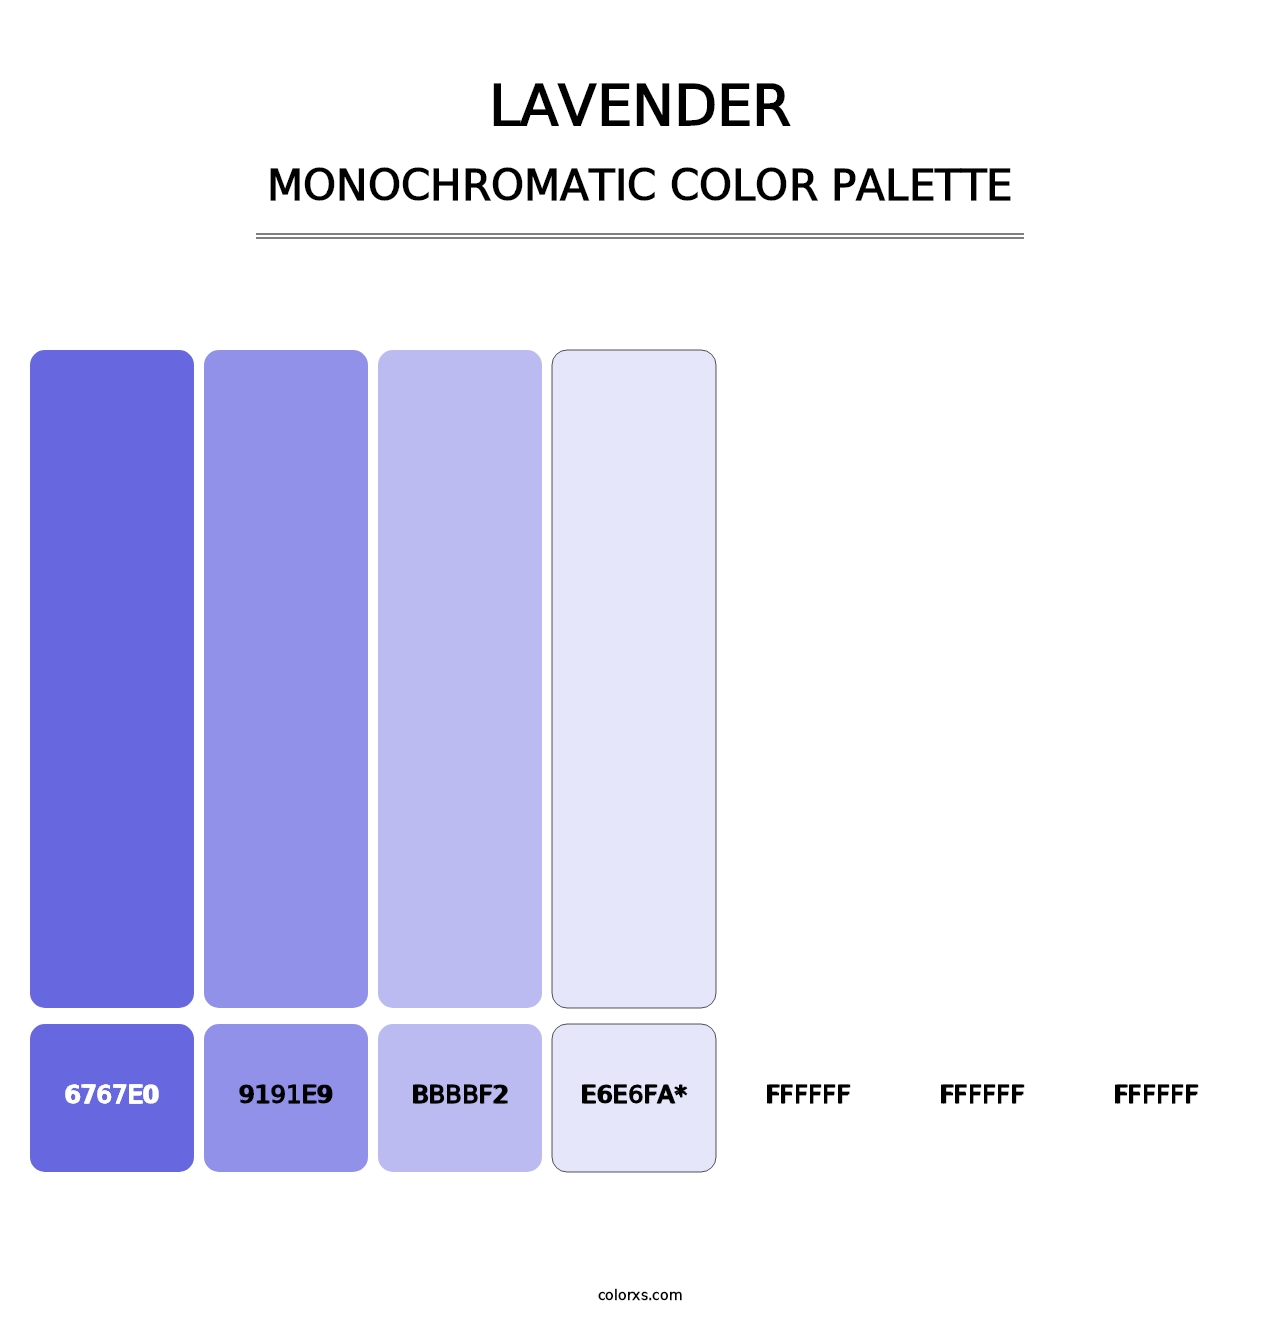 Lavender - Monochromatic Color Palette